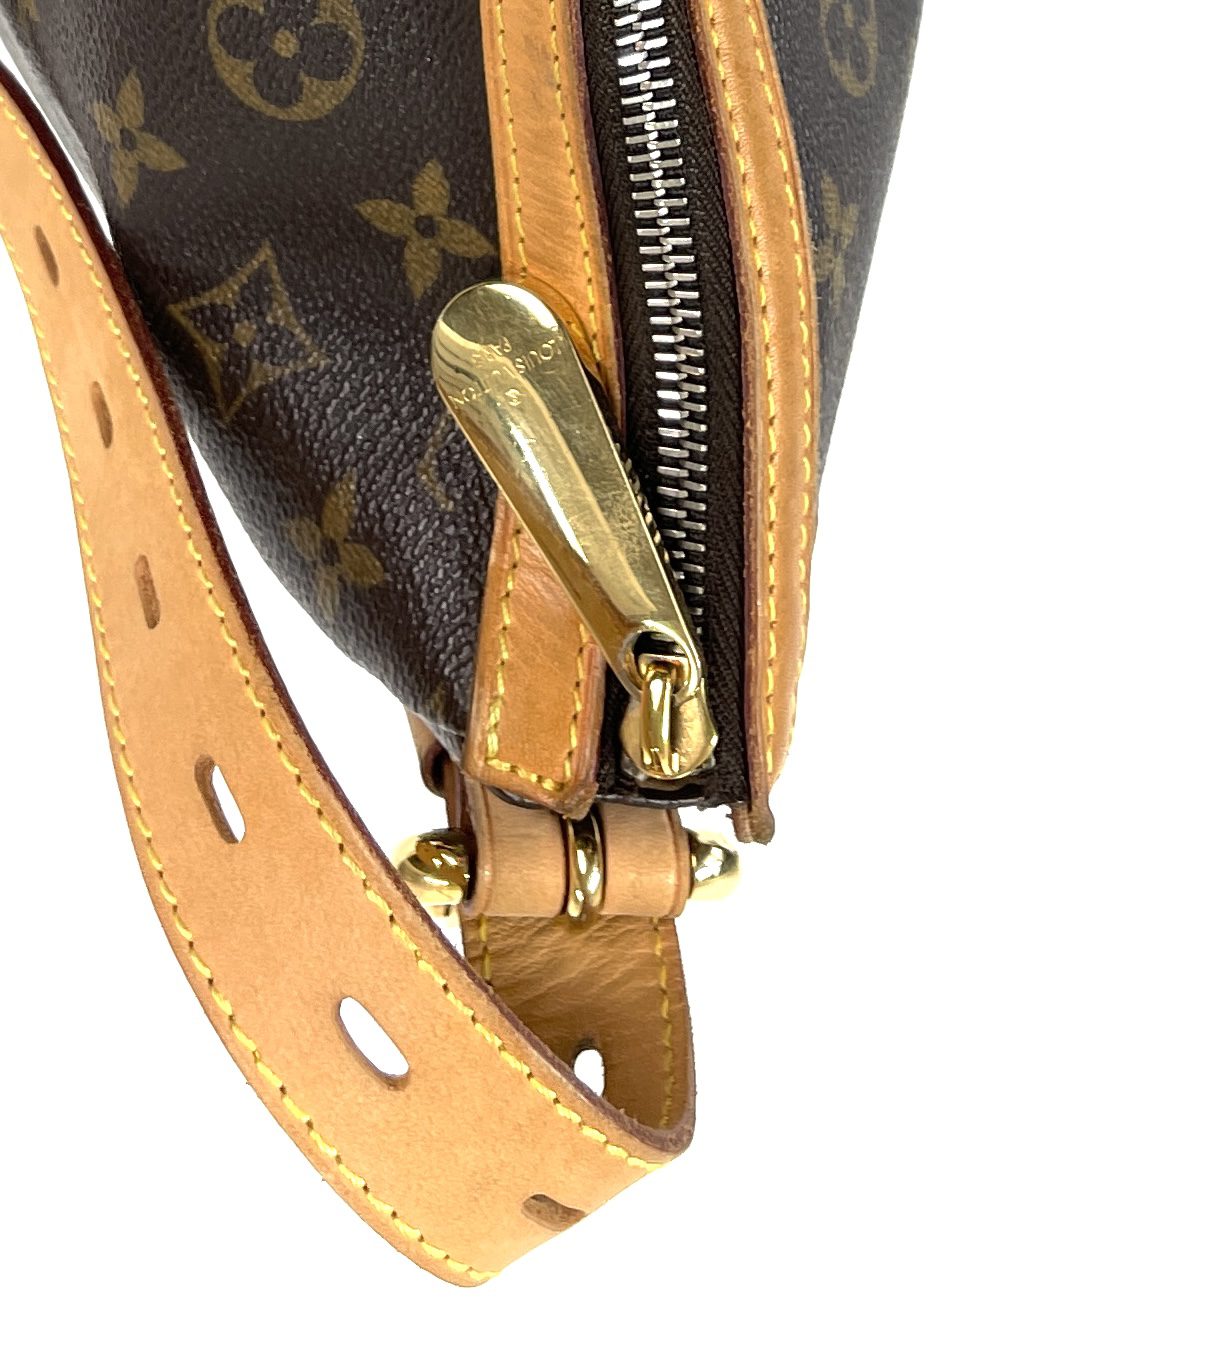 Louis Vuitton Vintage Tulum GM Shoulder Bag